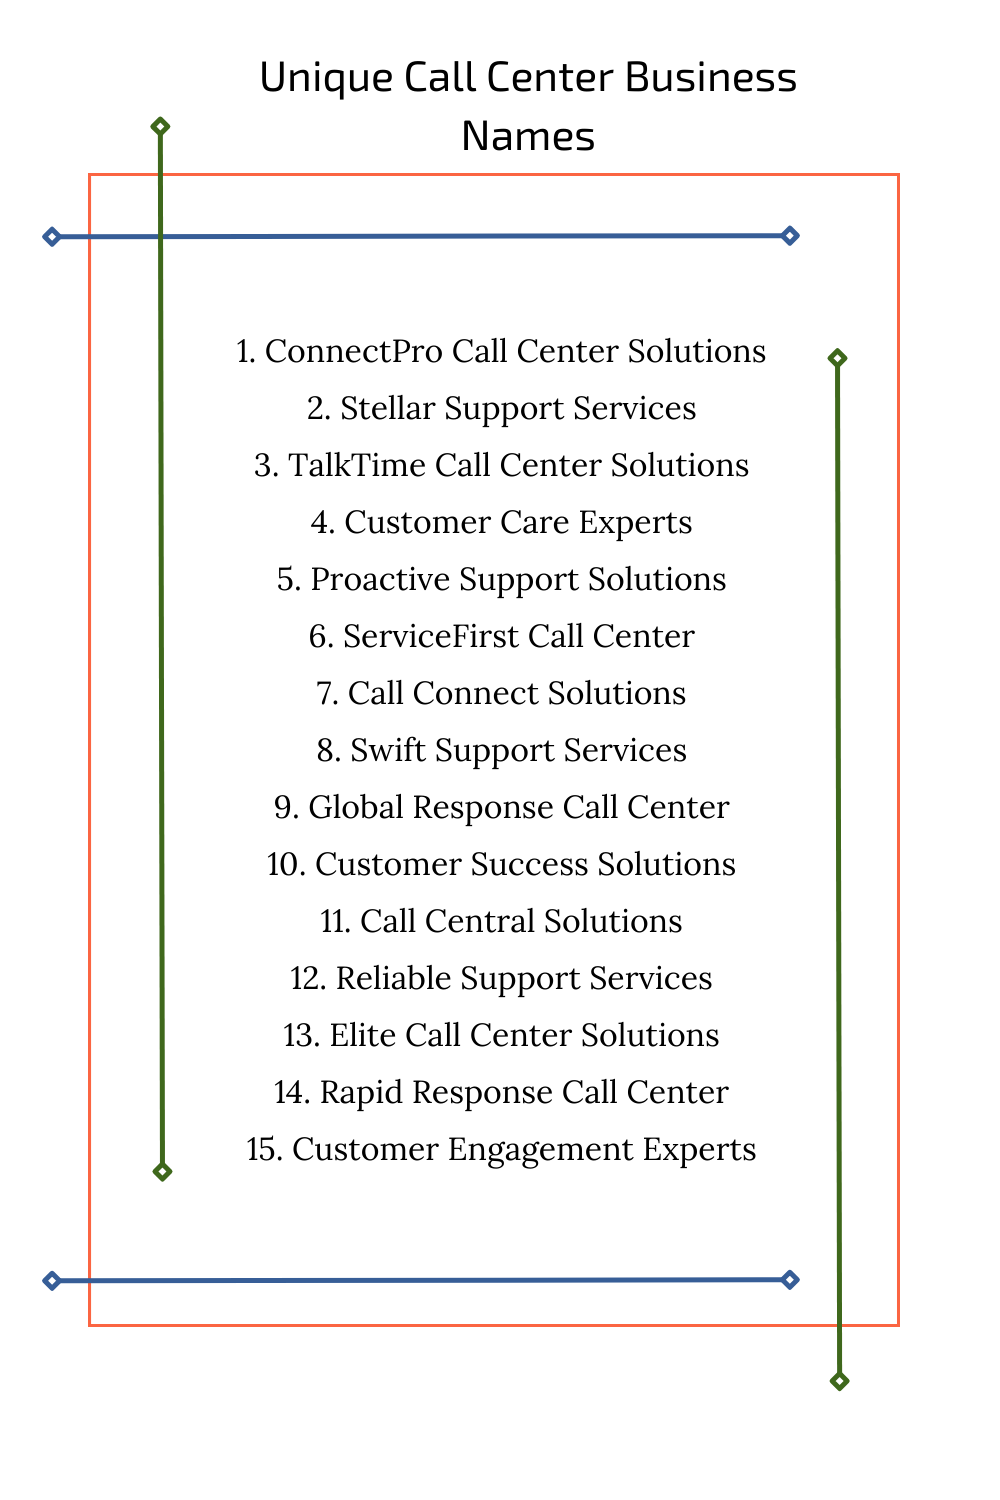 Unique Call Center Business Names